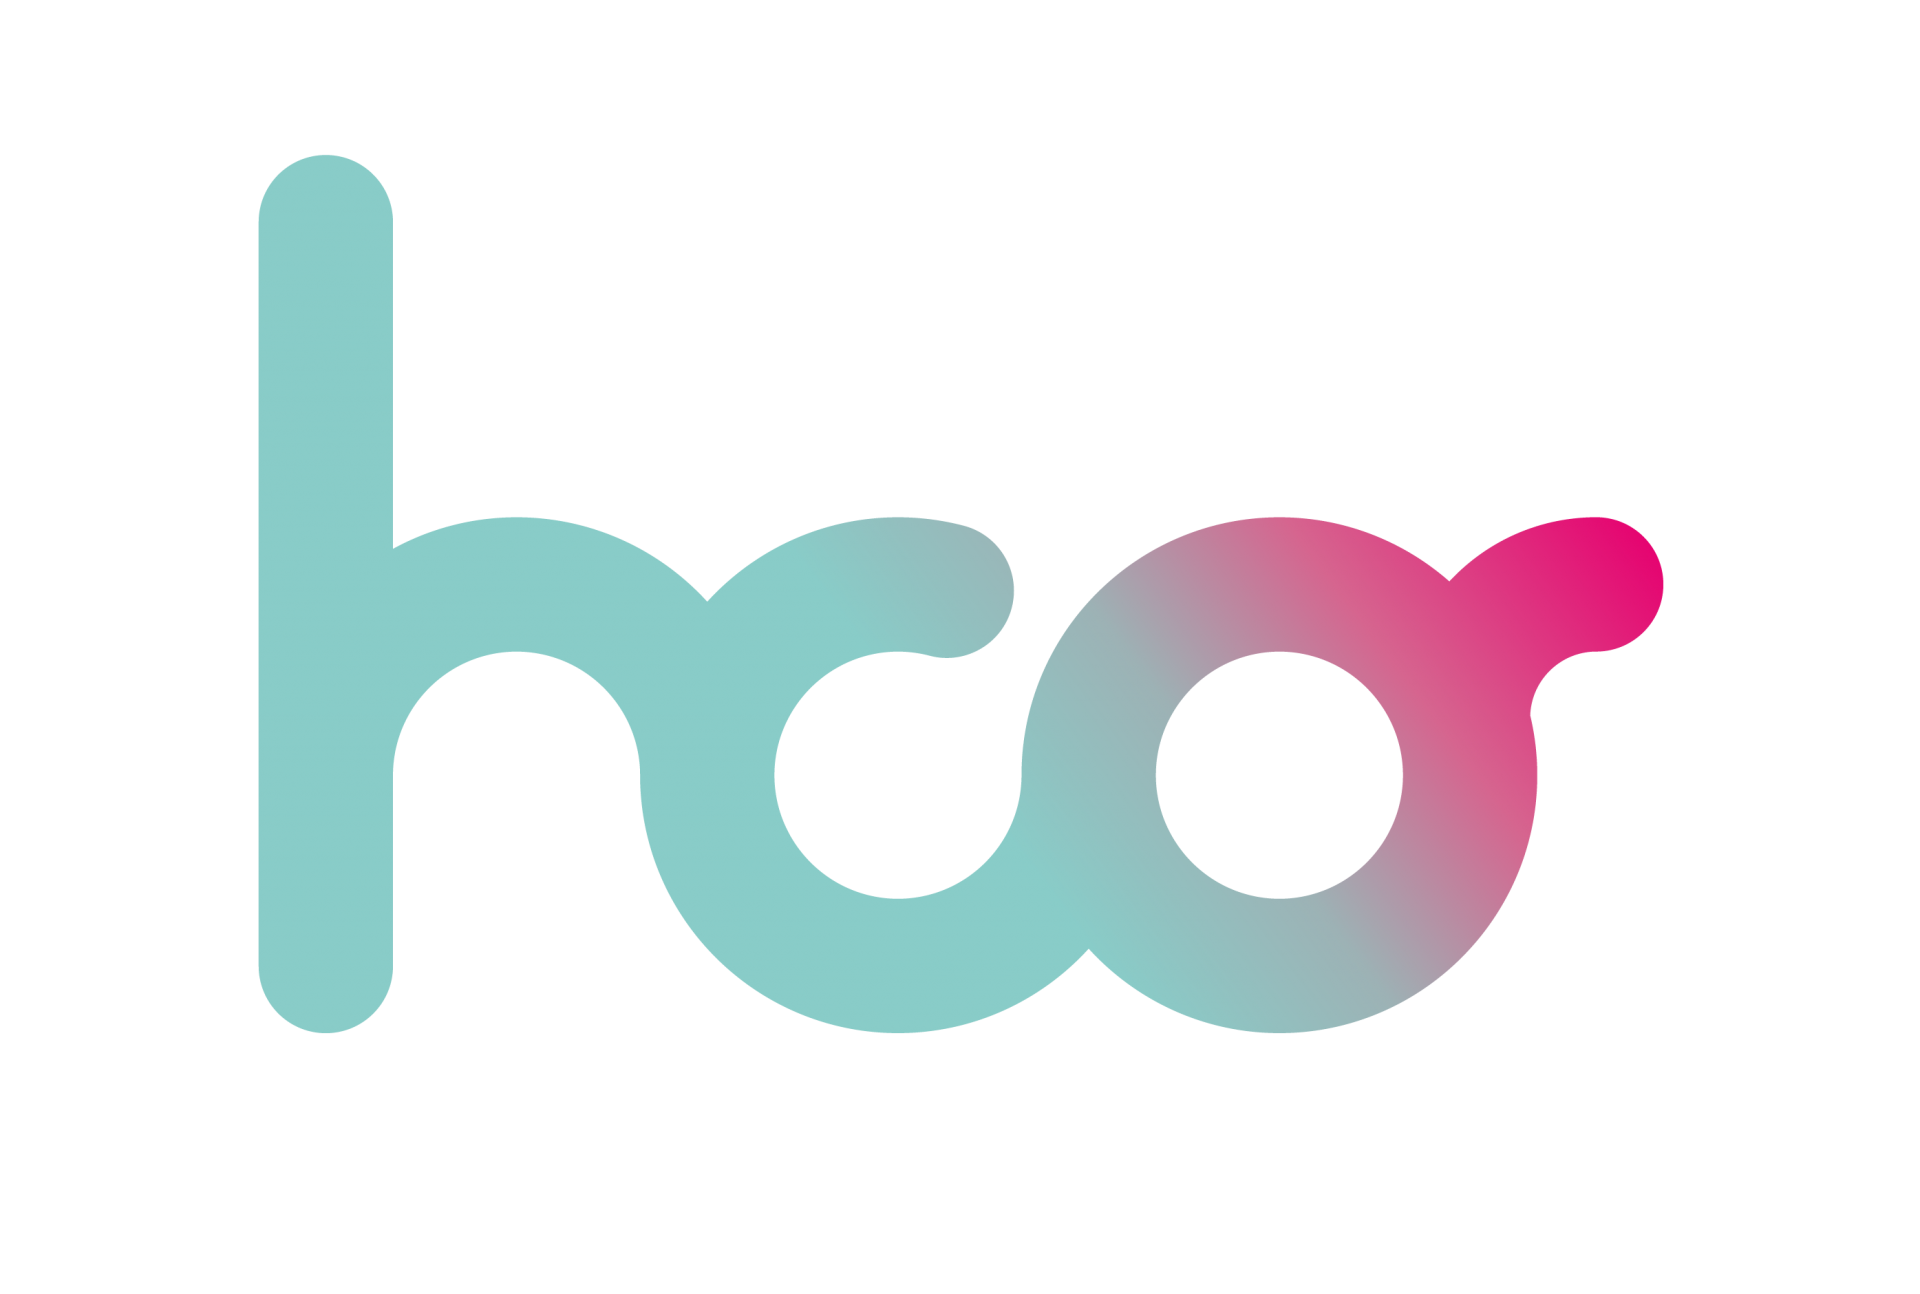 hco_logo